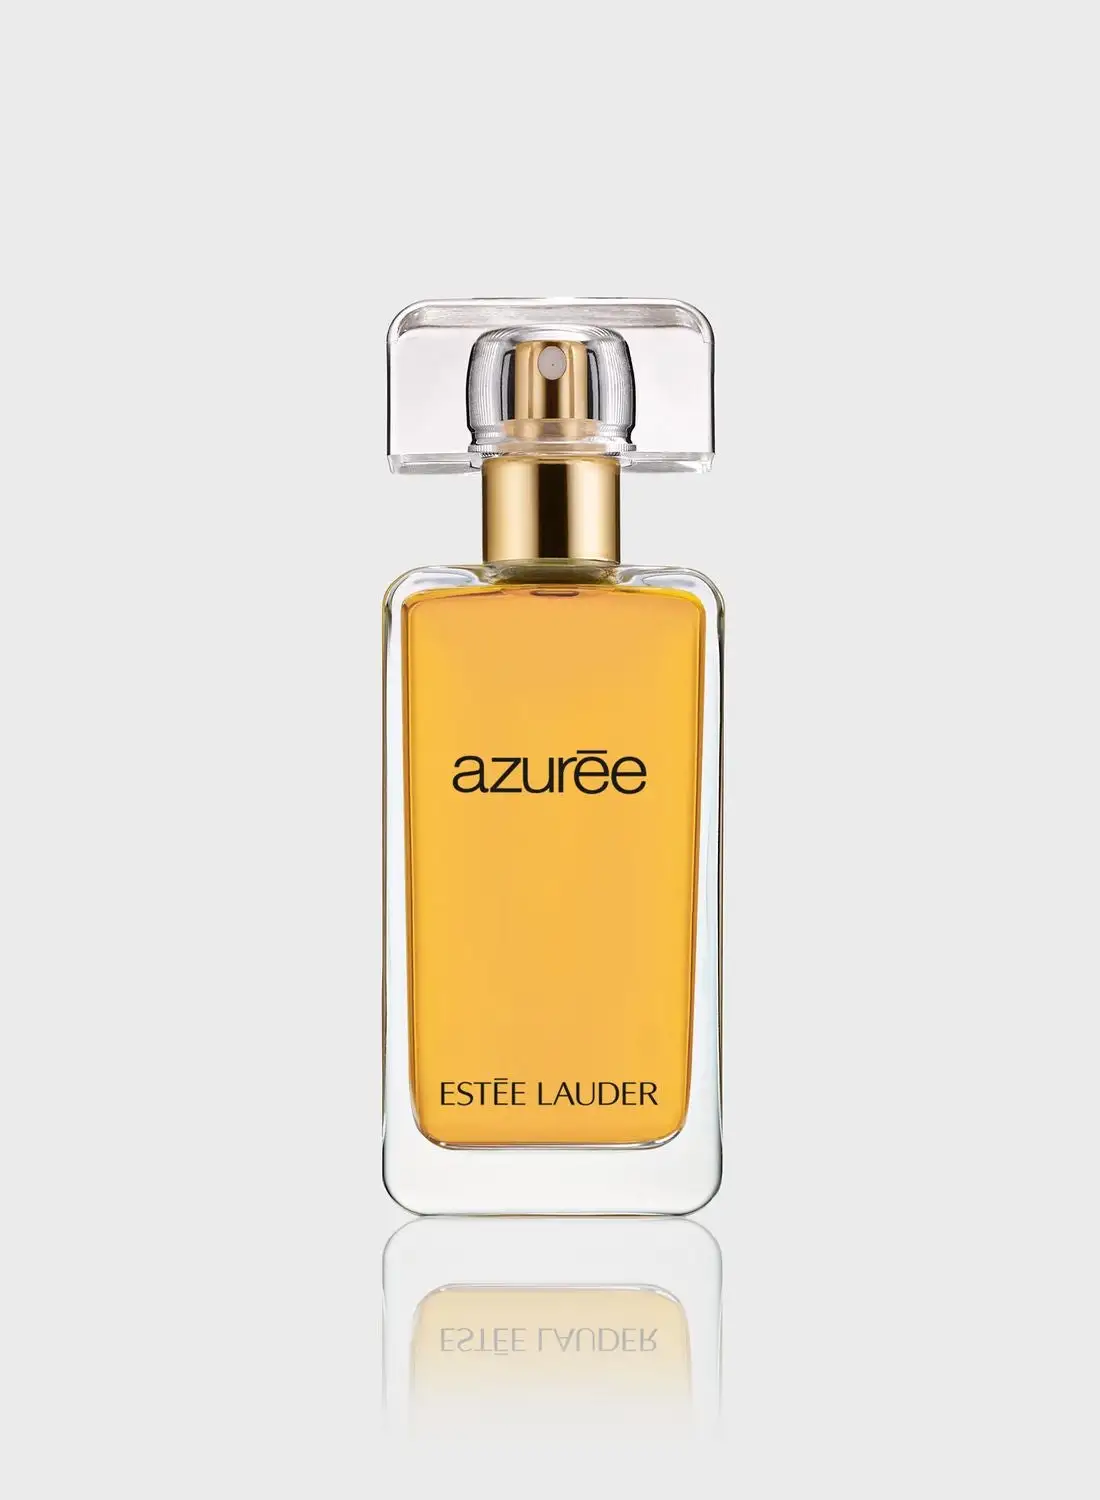 ESTEE LAUDER Azurée Eau de Parfum 50ml